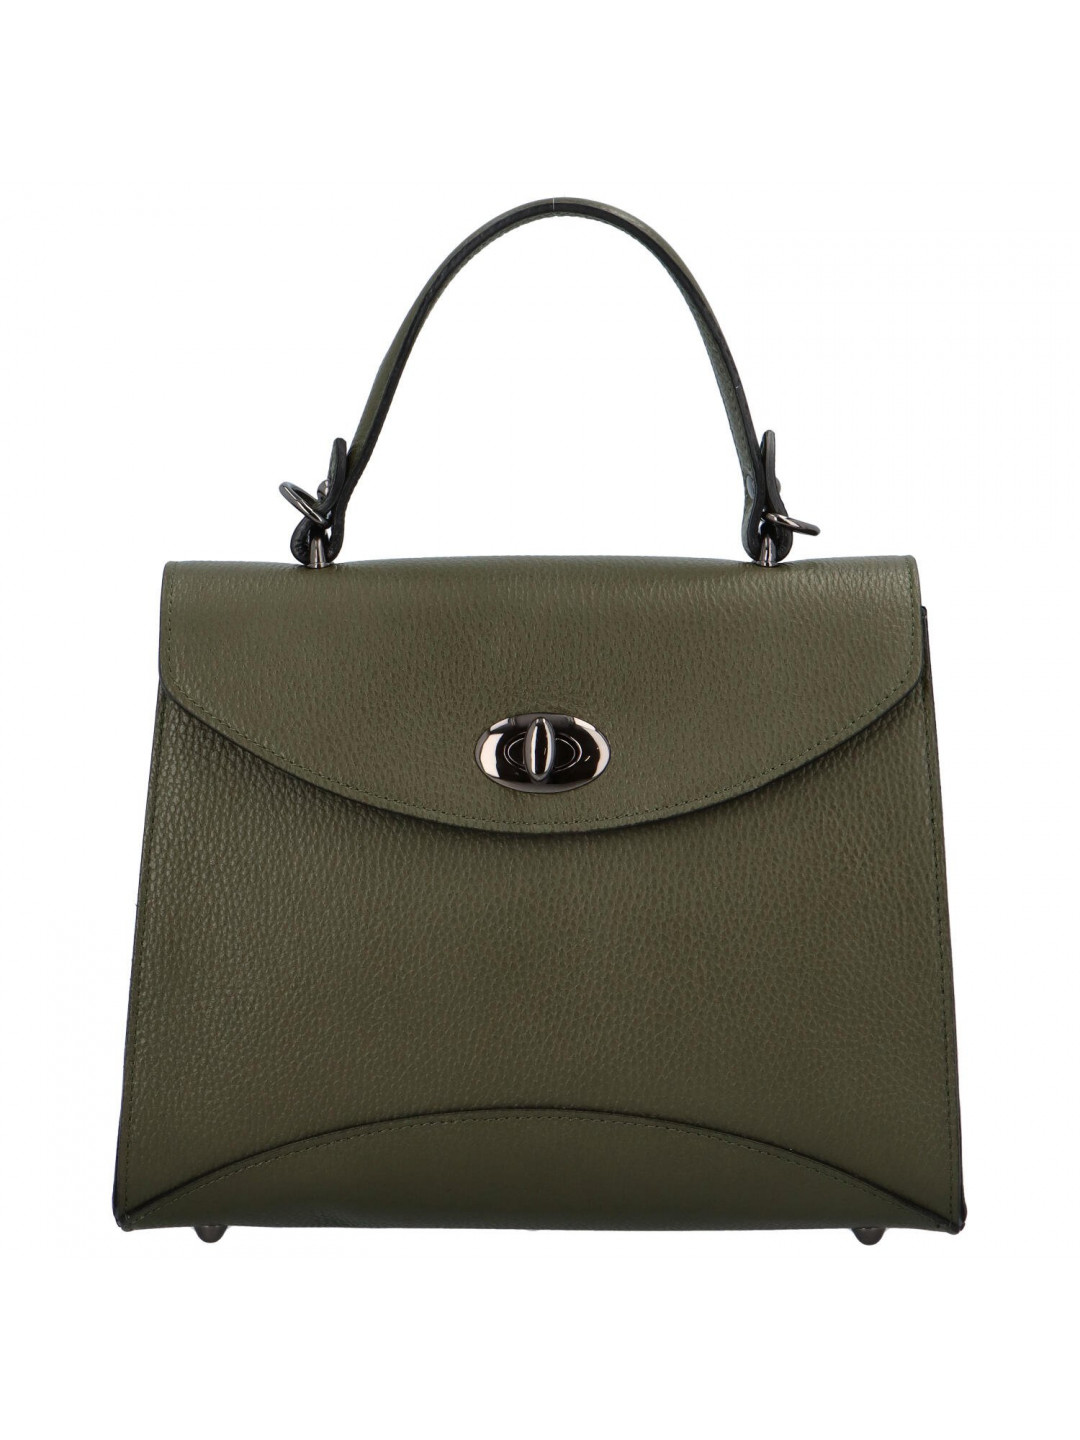 Luxusní dámská kožená kufříková kabelka do ruky Anne zelená